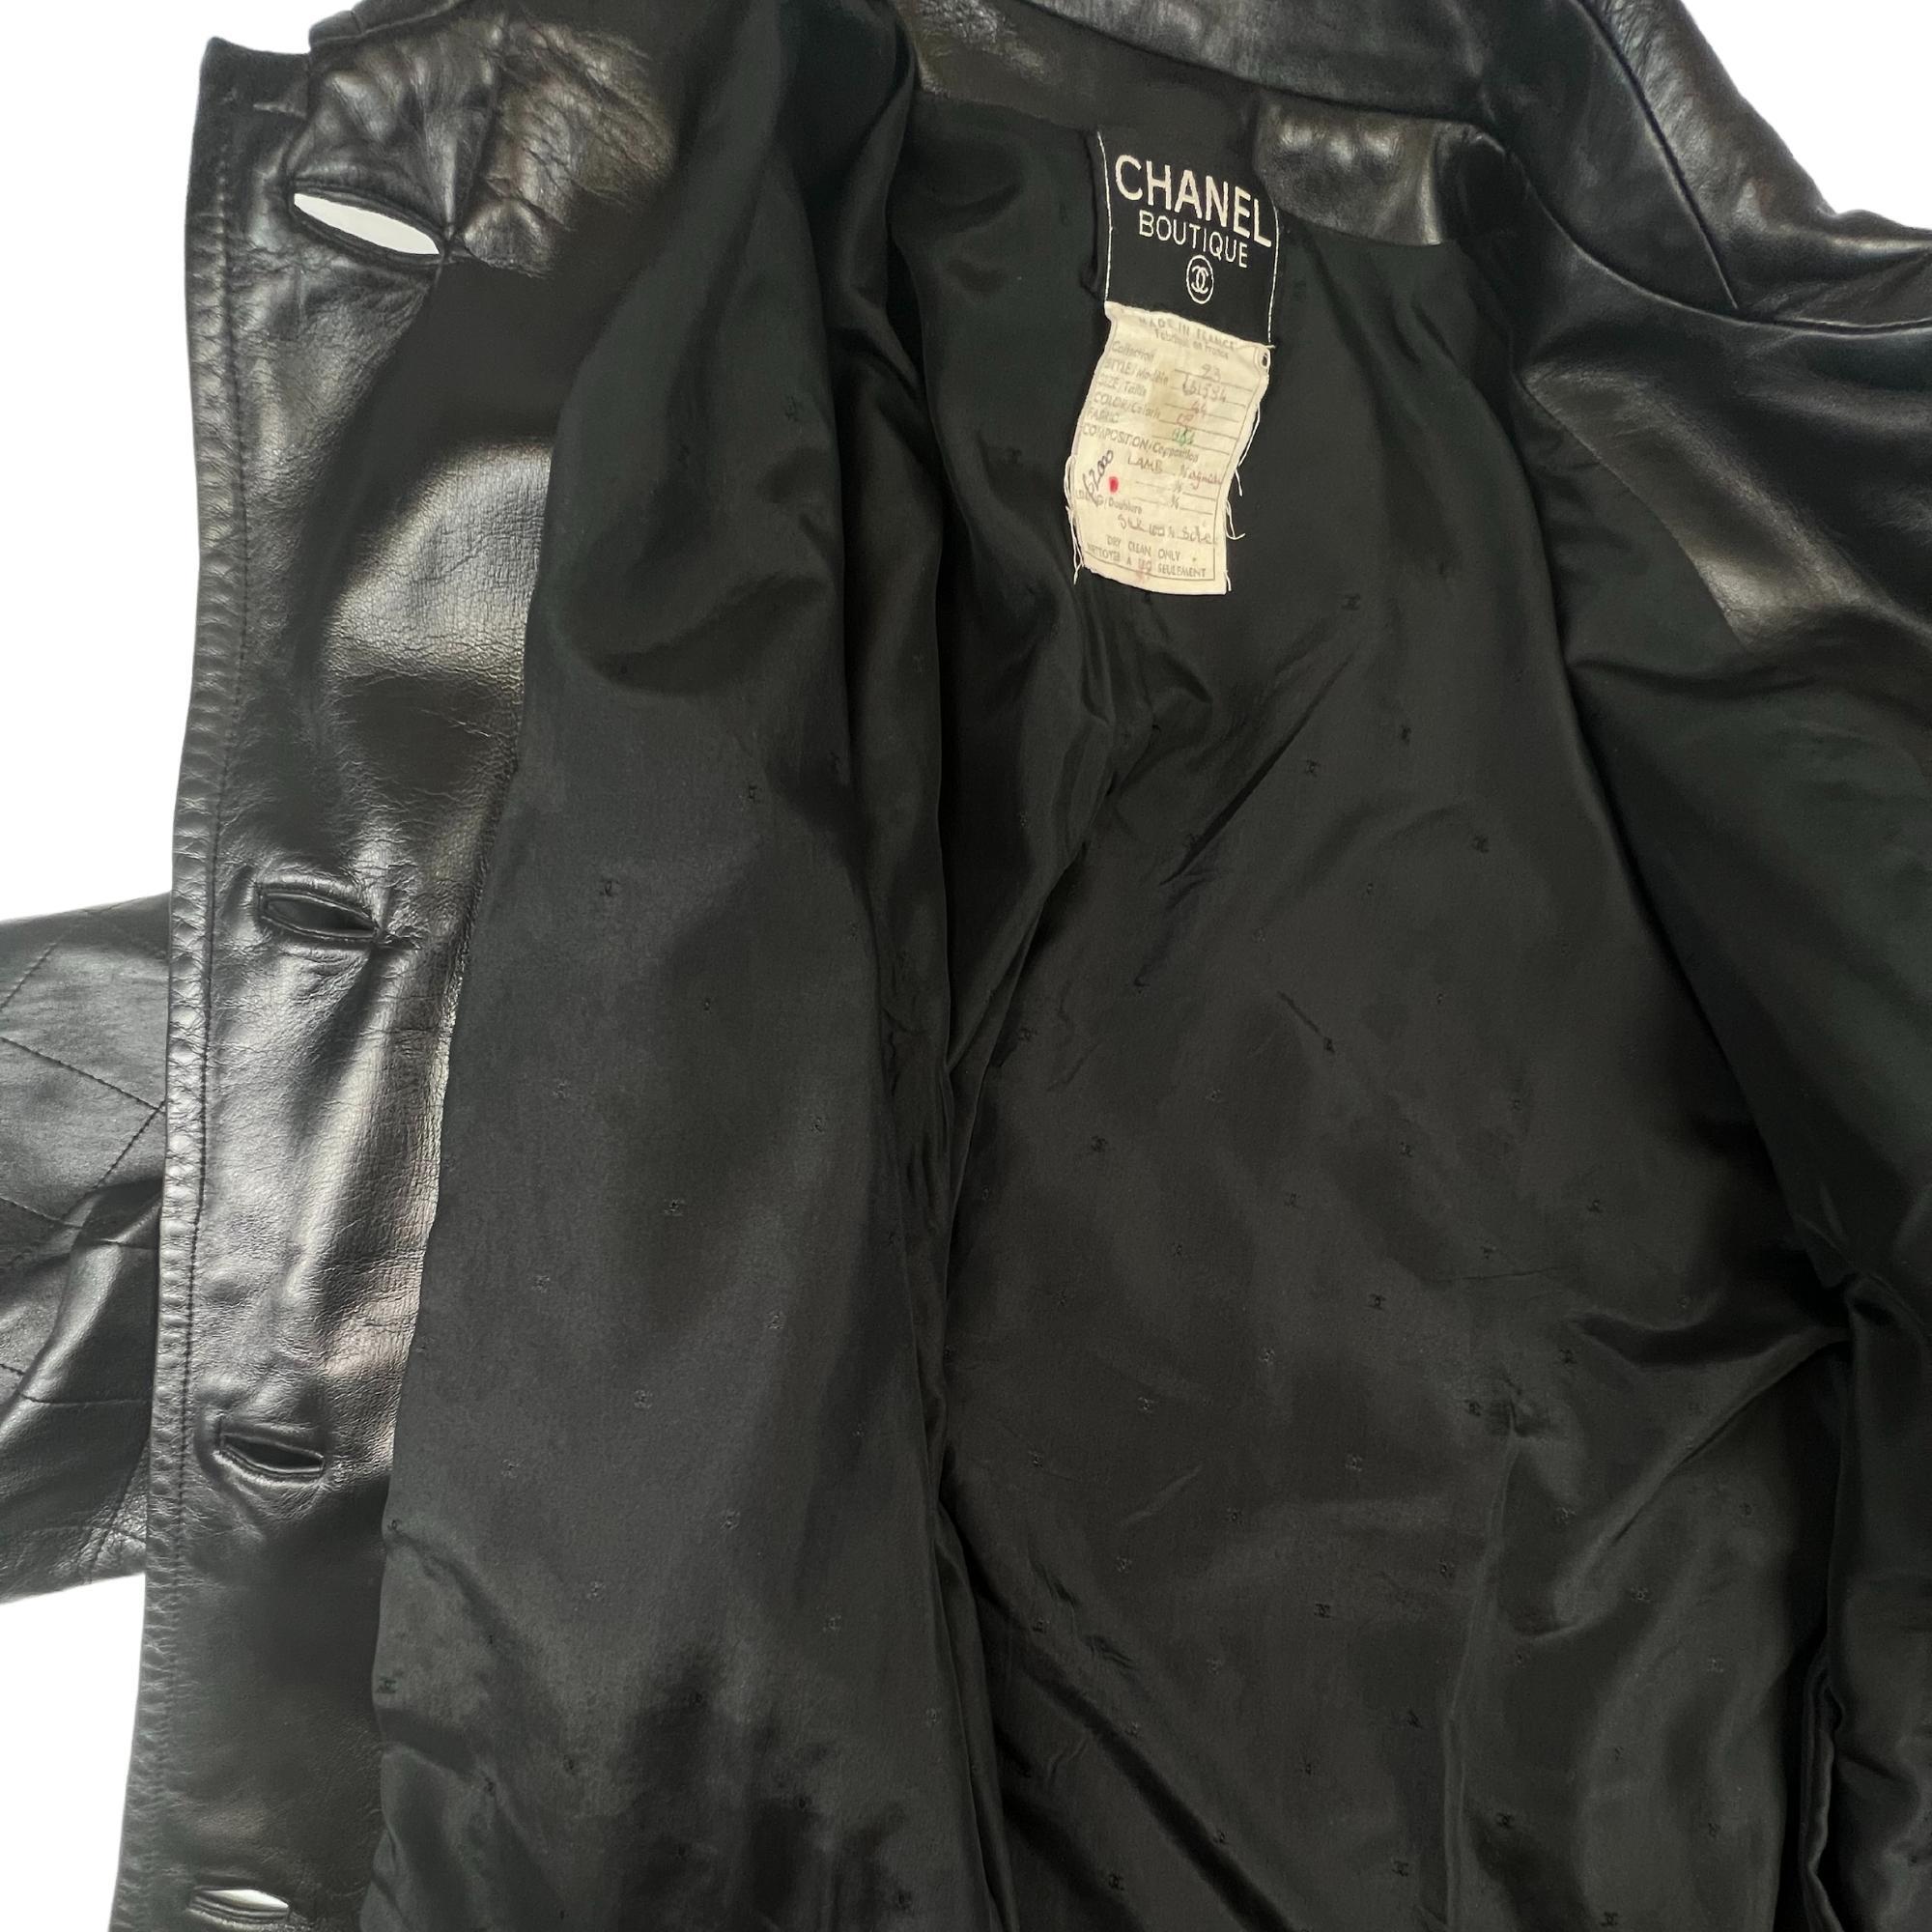 Chanel Vintage Black Leather Swing Coat (FR44) 4